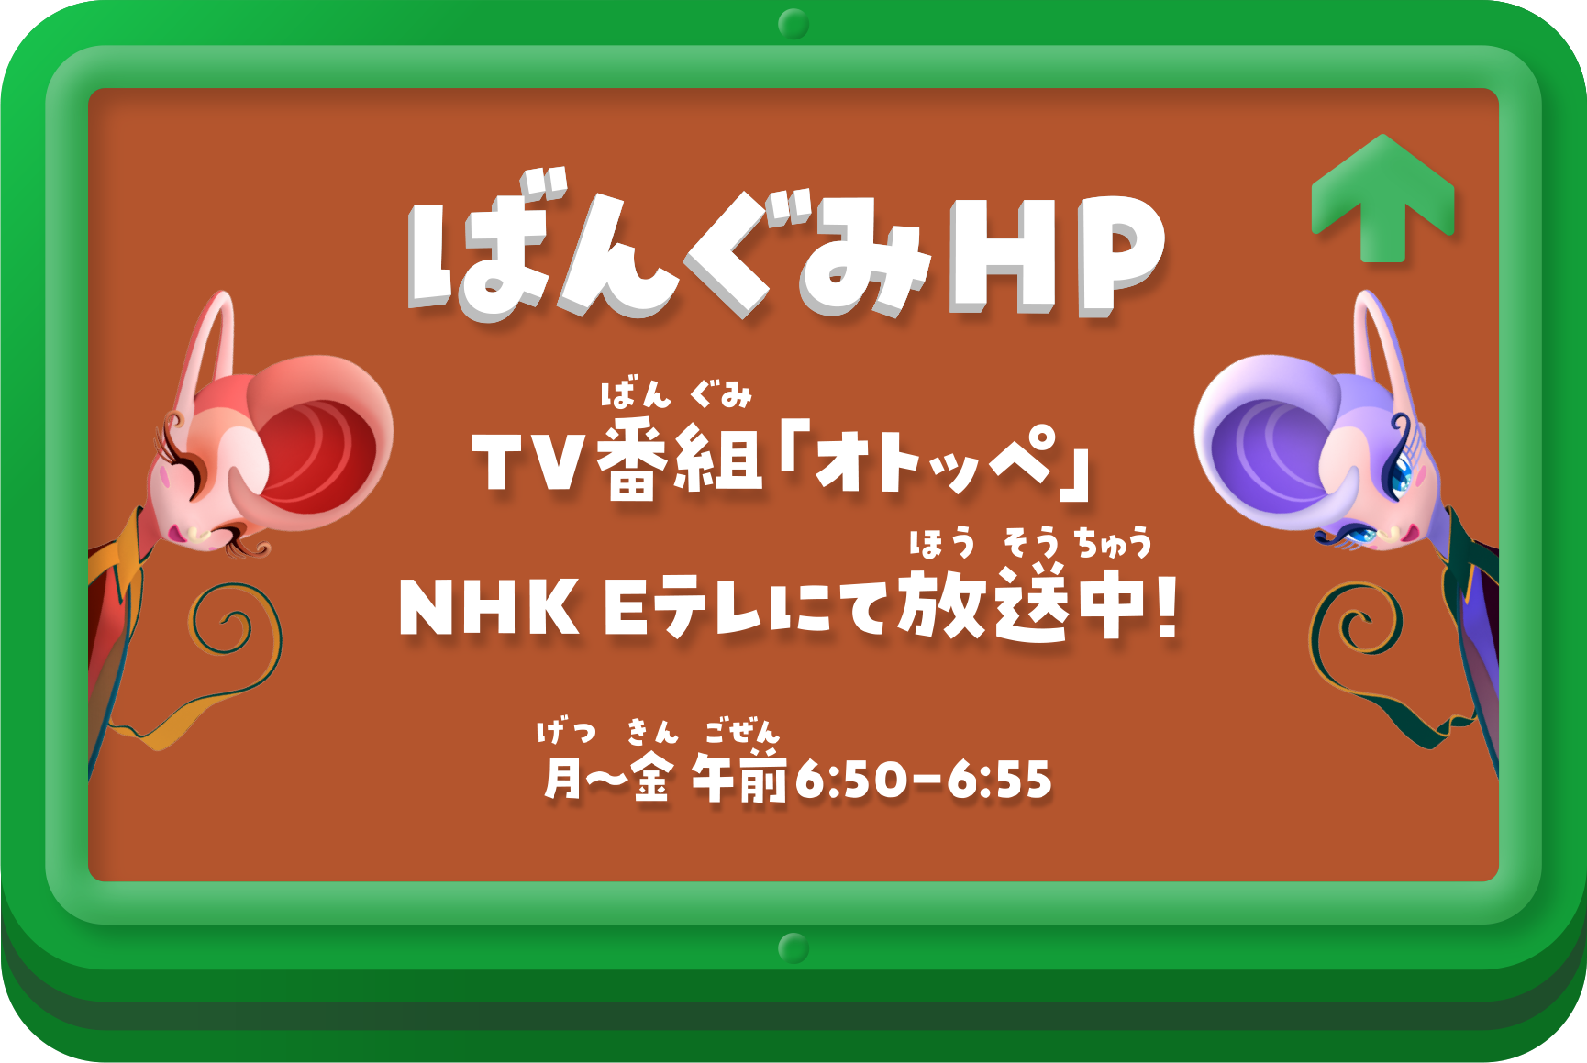 ばんぐみHP TV番組「オトッペ」NHK Eテレにて放送中！ 月～金 午前6:50-6:55